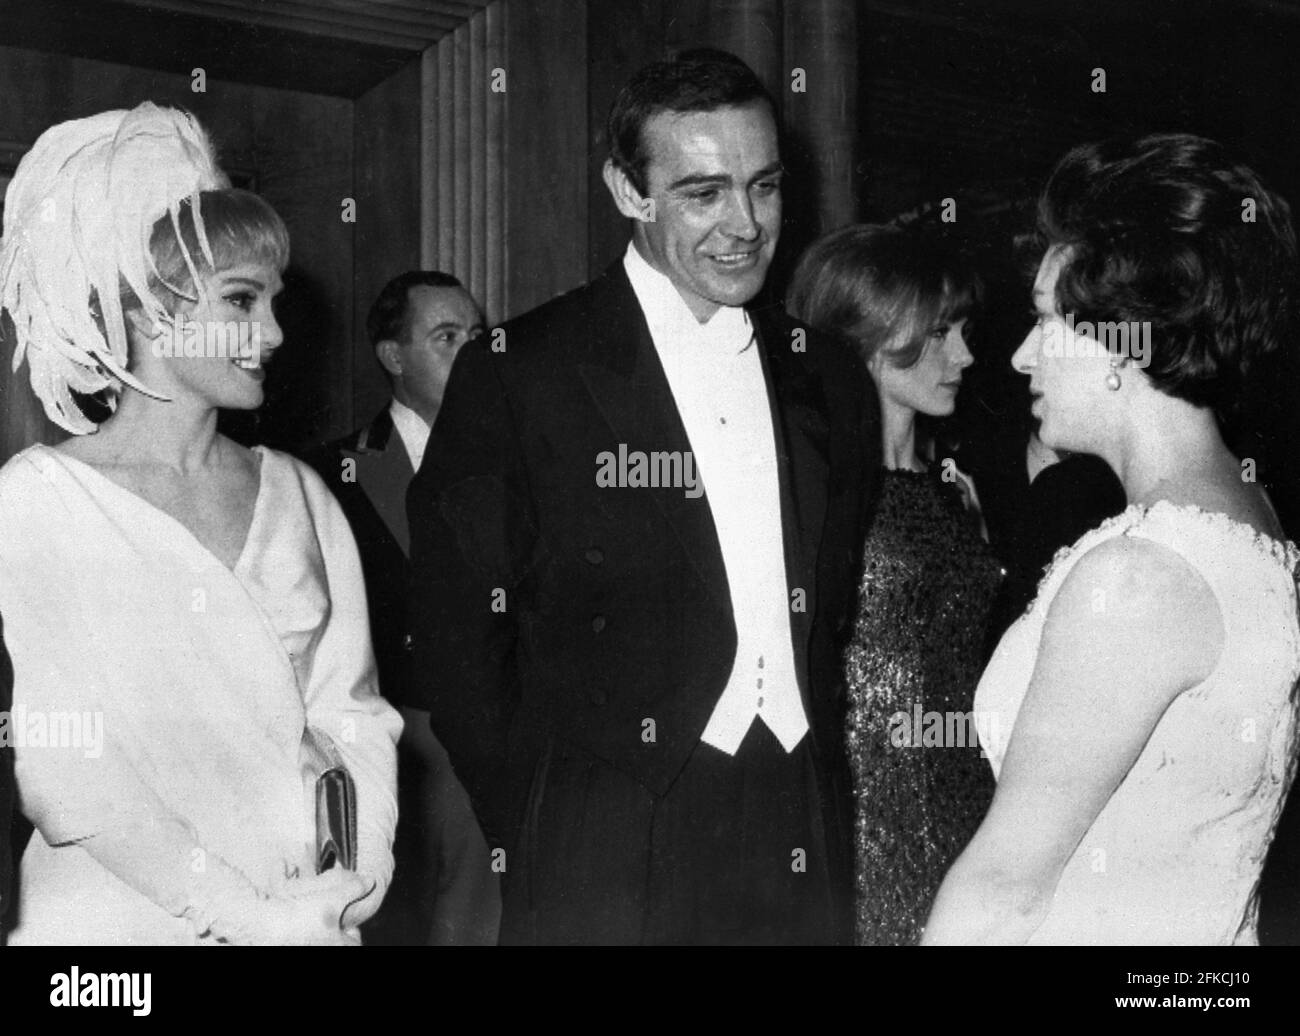 Der Schauspieler Sean Connery und seine Frau, die amerikanische Schauspielerin Diane Cilento, werden Prinzessin Margaret am 15. Februar 1965 während der Royal Film Performance von „Lord Jim“ vorgestellt. Stockfoto